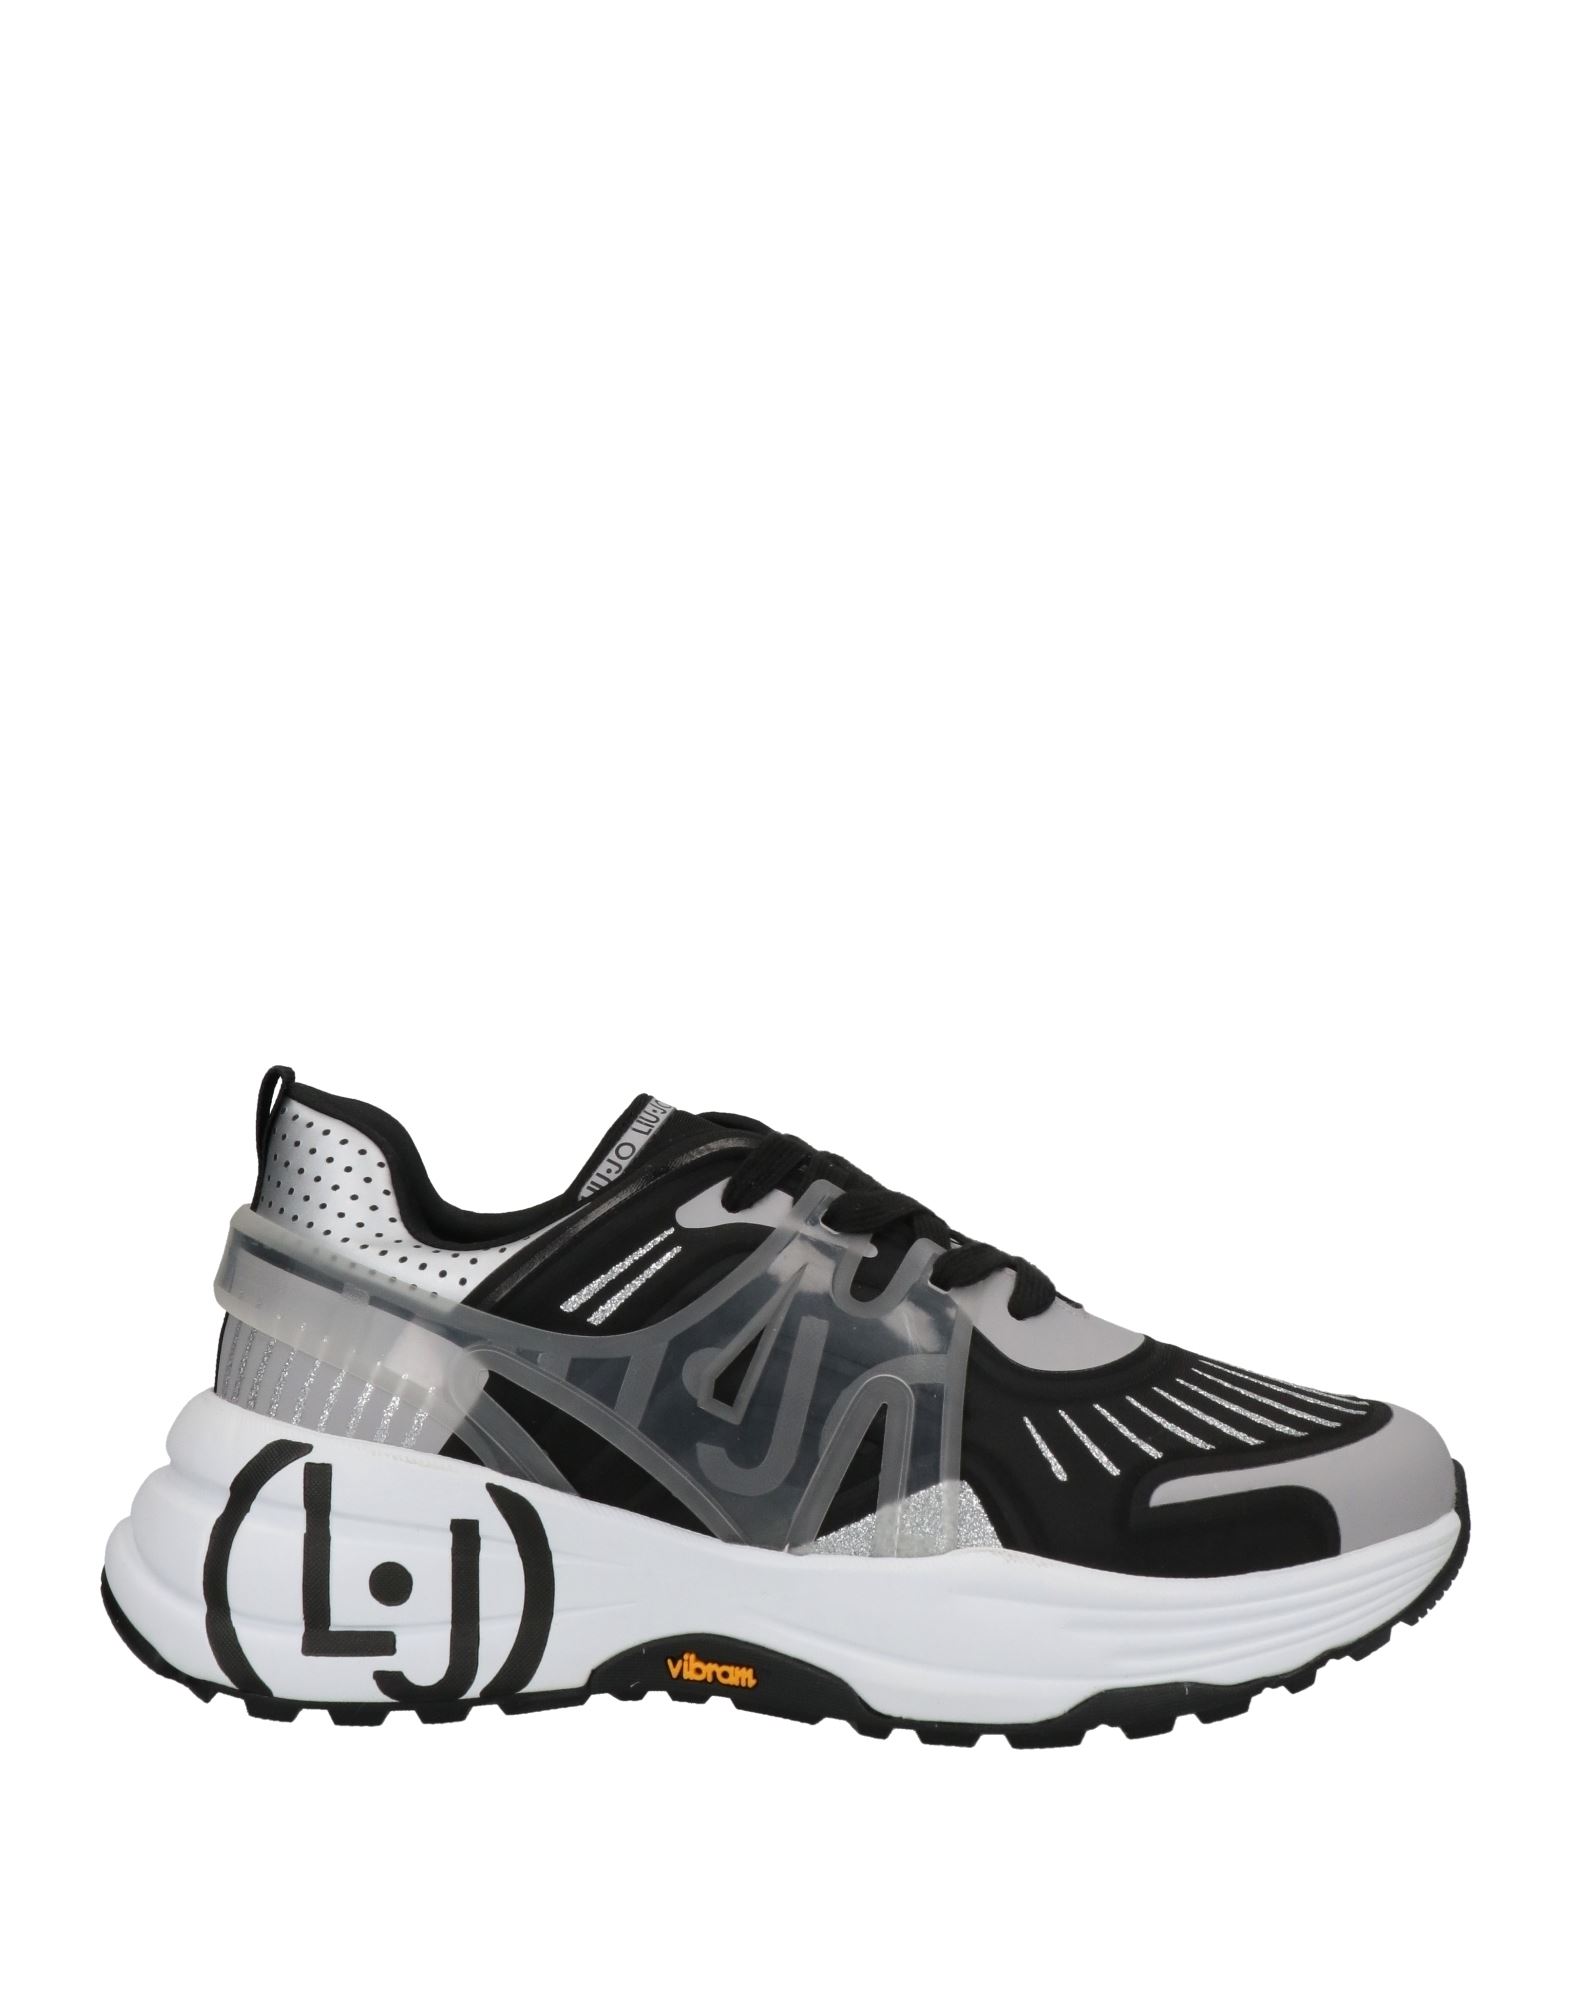 Liu •jo Sneakers In Black